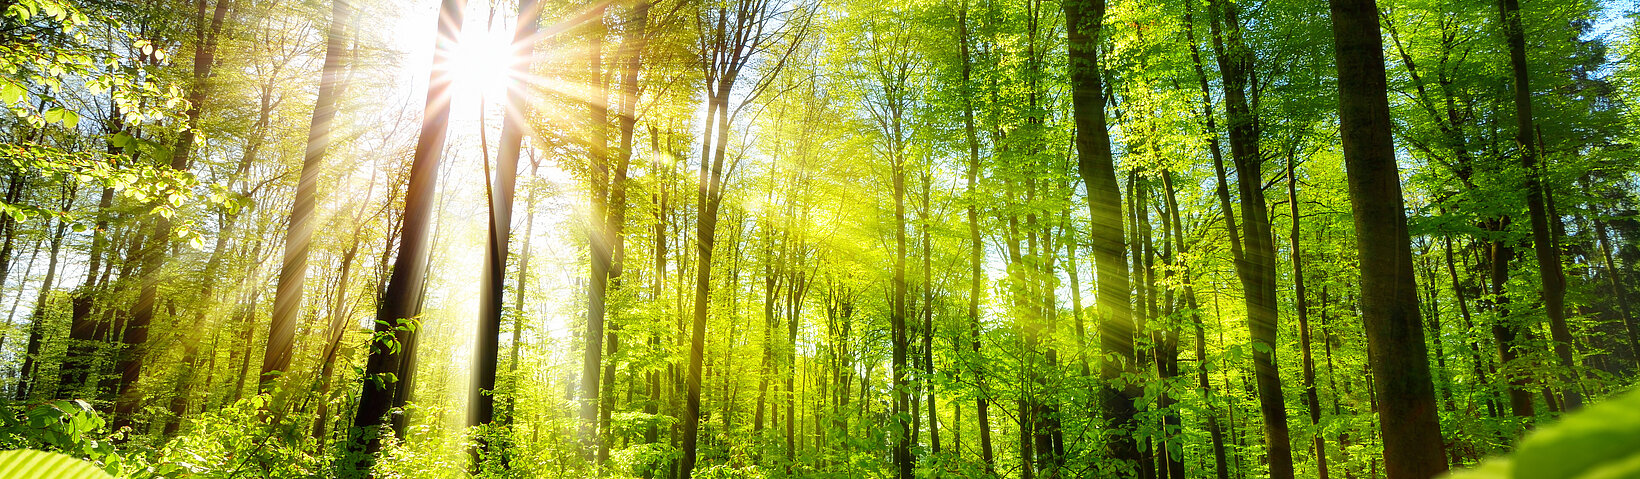 Sonnenlicht durchfluteter grüner Wald 